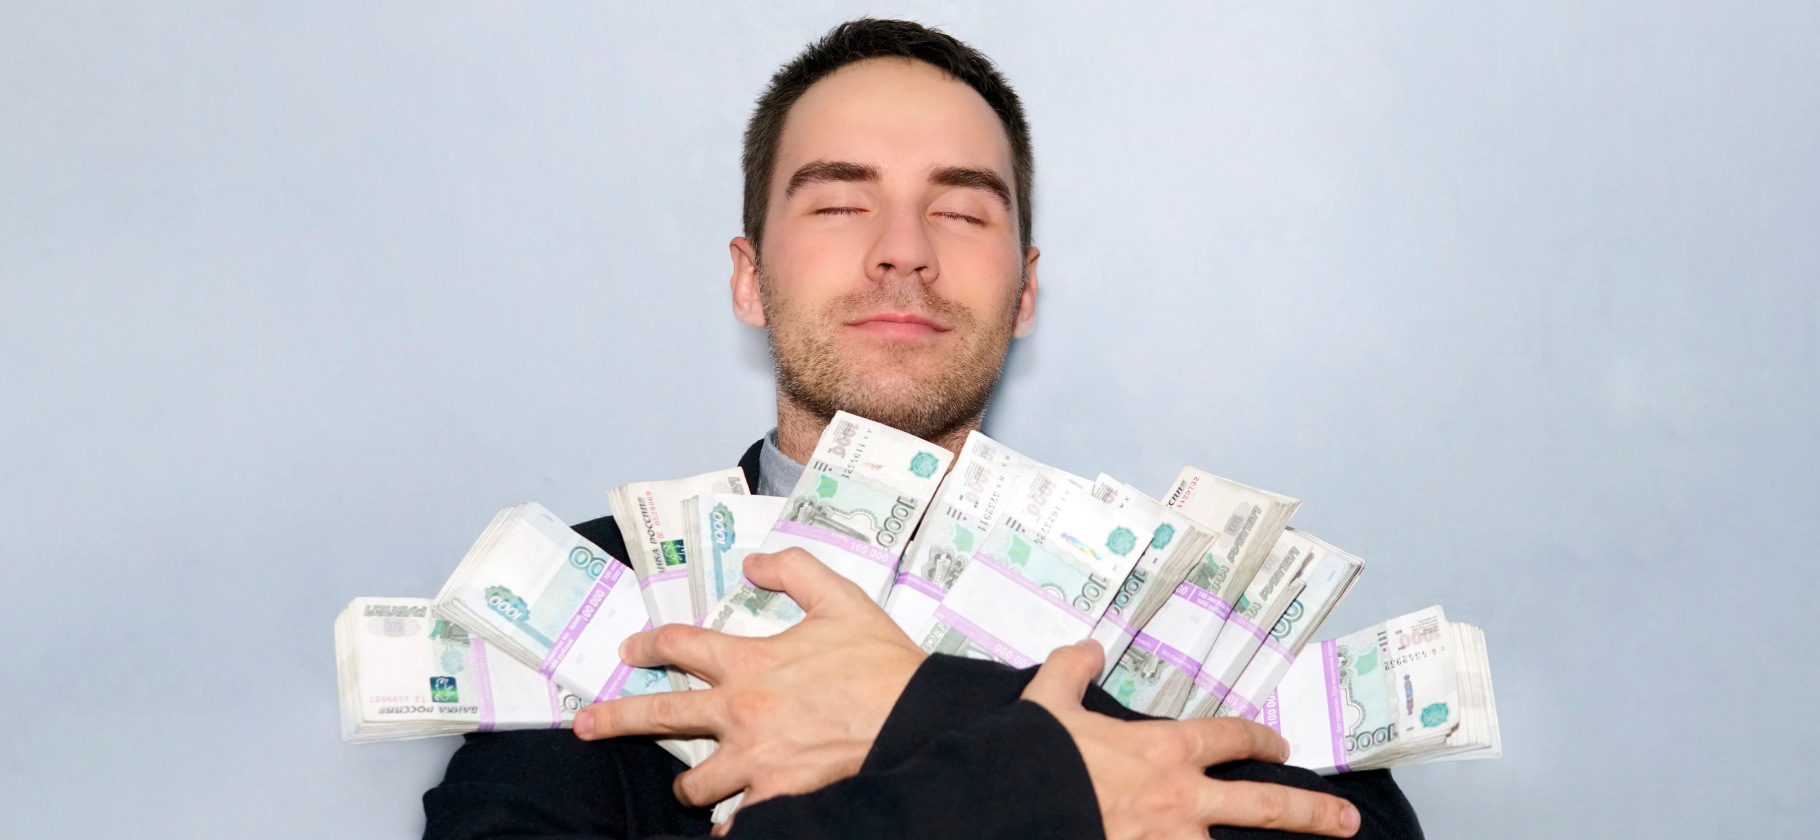 «Генерировать деньги в нужном количе­стве»: 14 сверх­спо­собно­стей, о которых мы лишь мечтаем